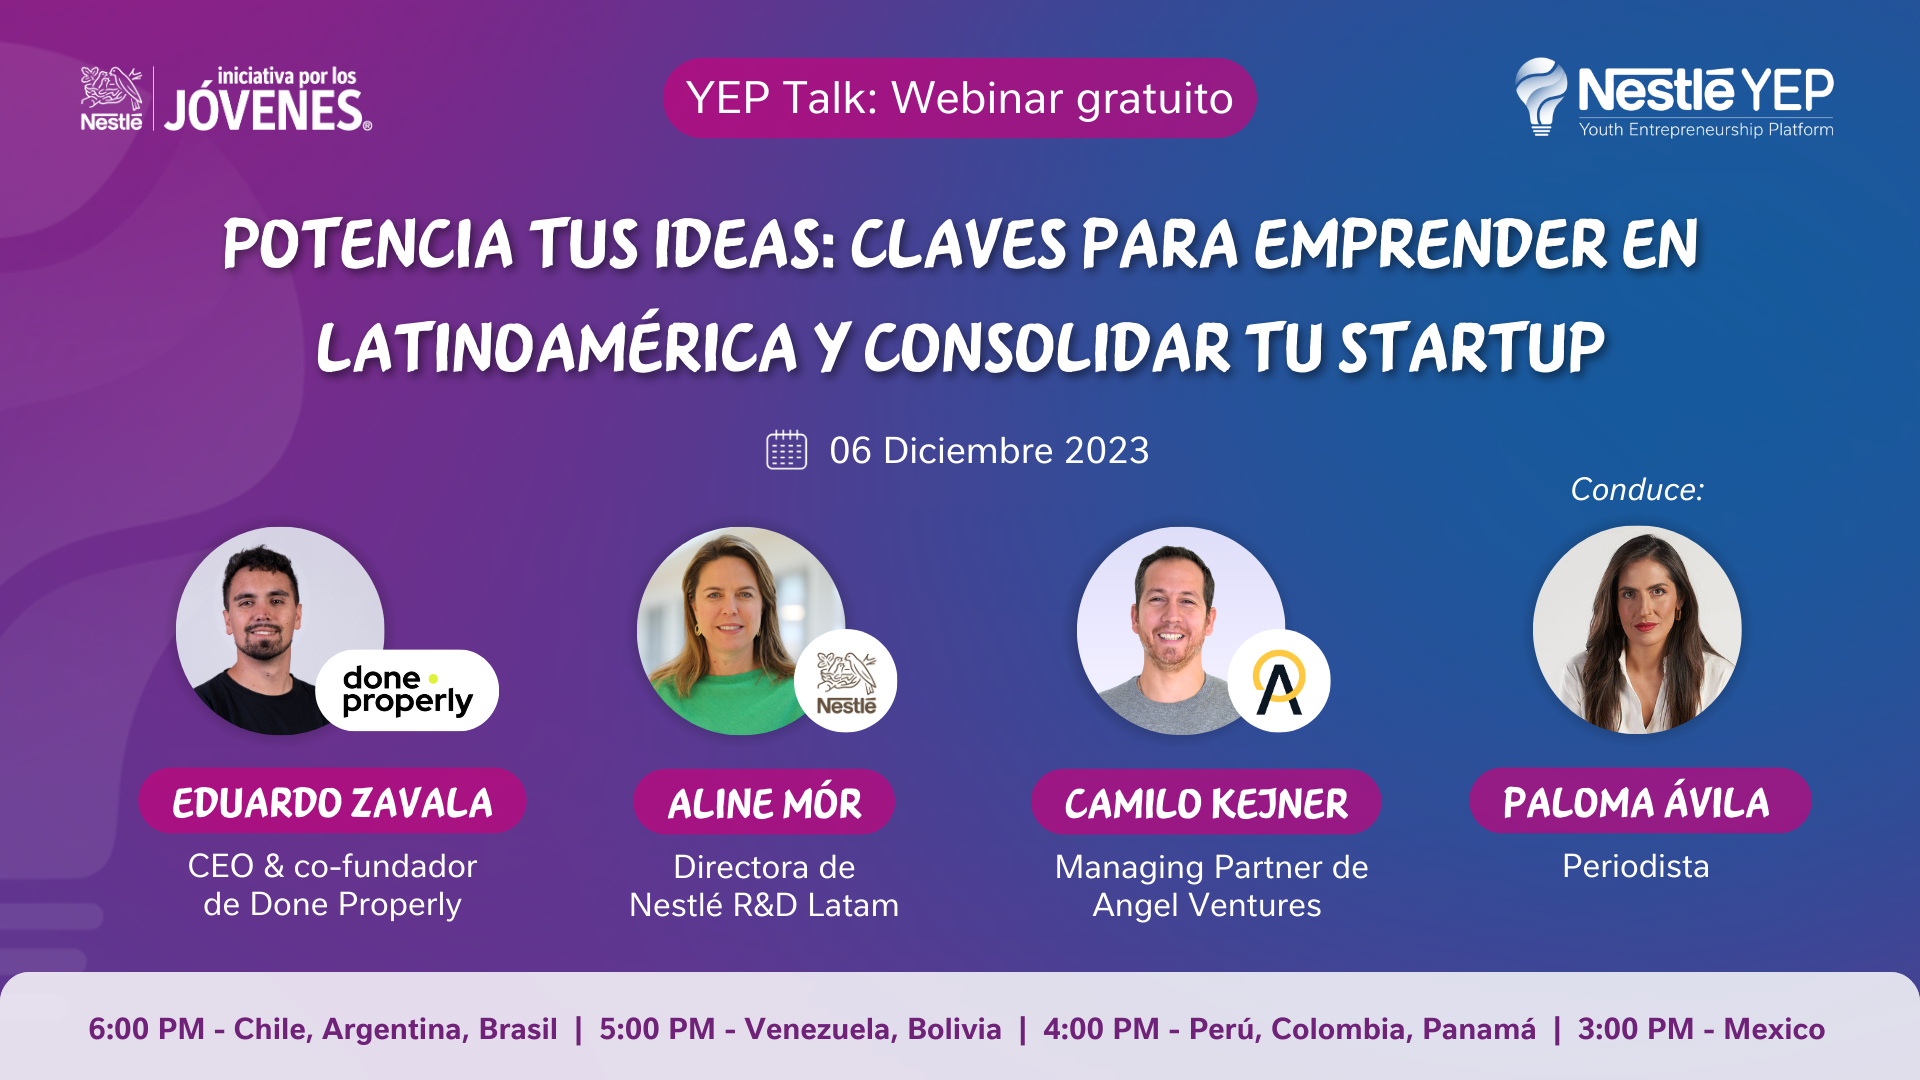 Nestlé YEP Talk: Webinar gratuito "Potencia tus Ideas: claves para emprender en Latinoamérica y consolidar tu startup"